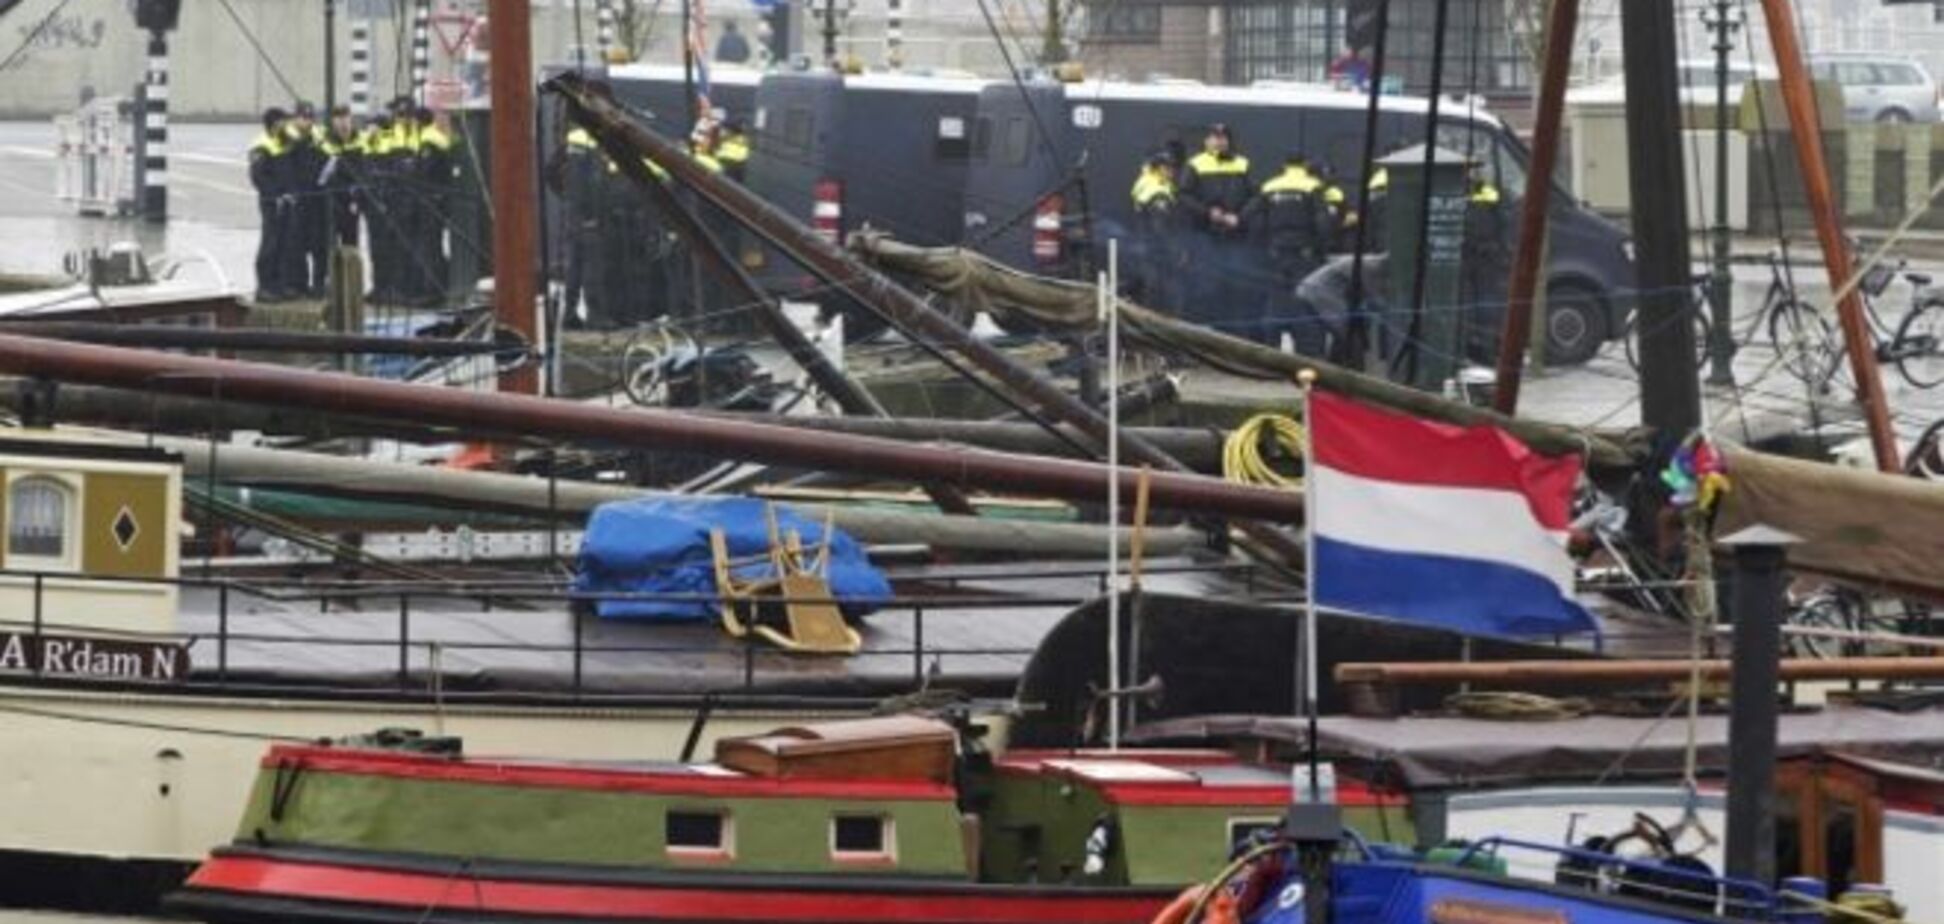 Амстердам остался без света: аэропорт закрыт, люди застряли в лифтах